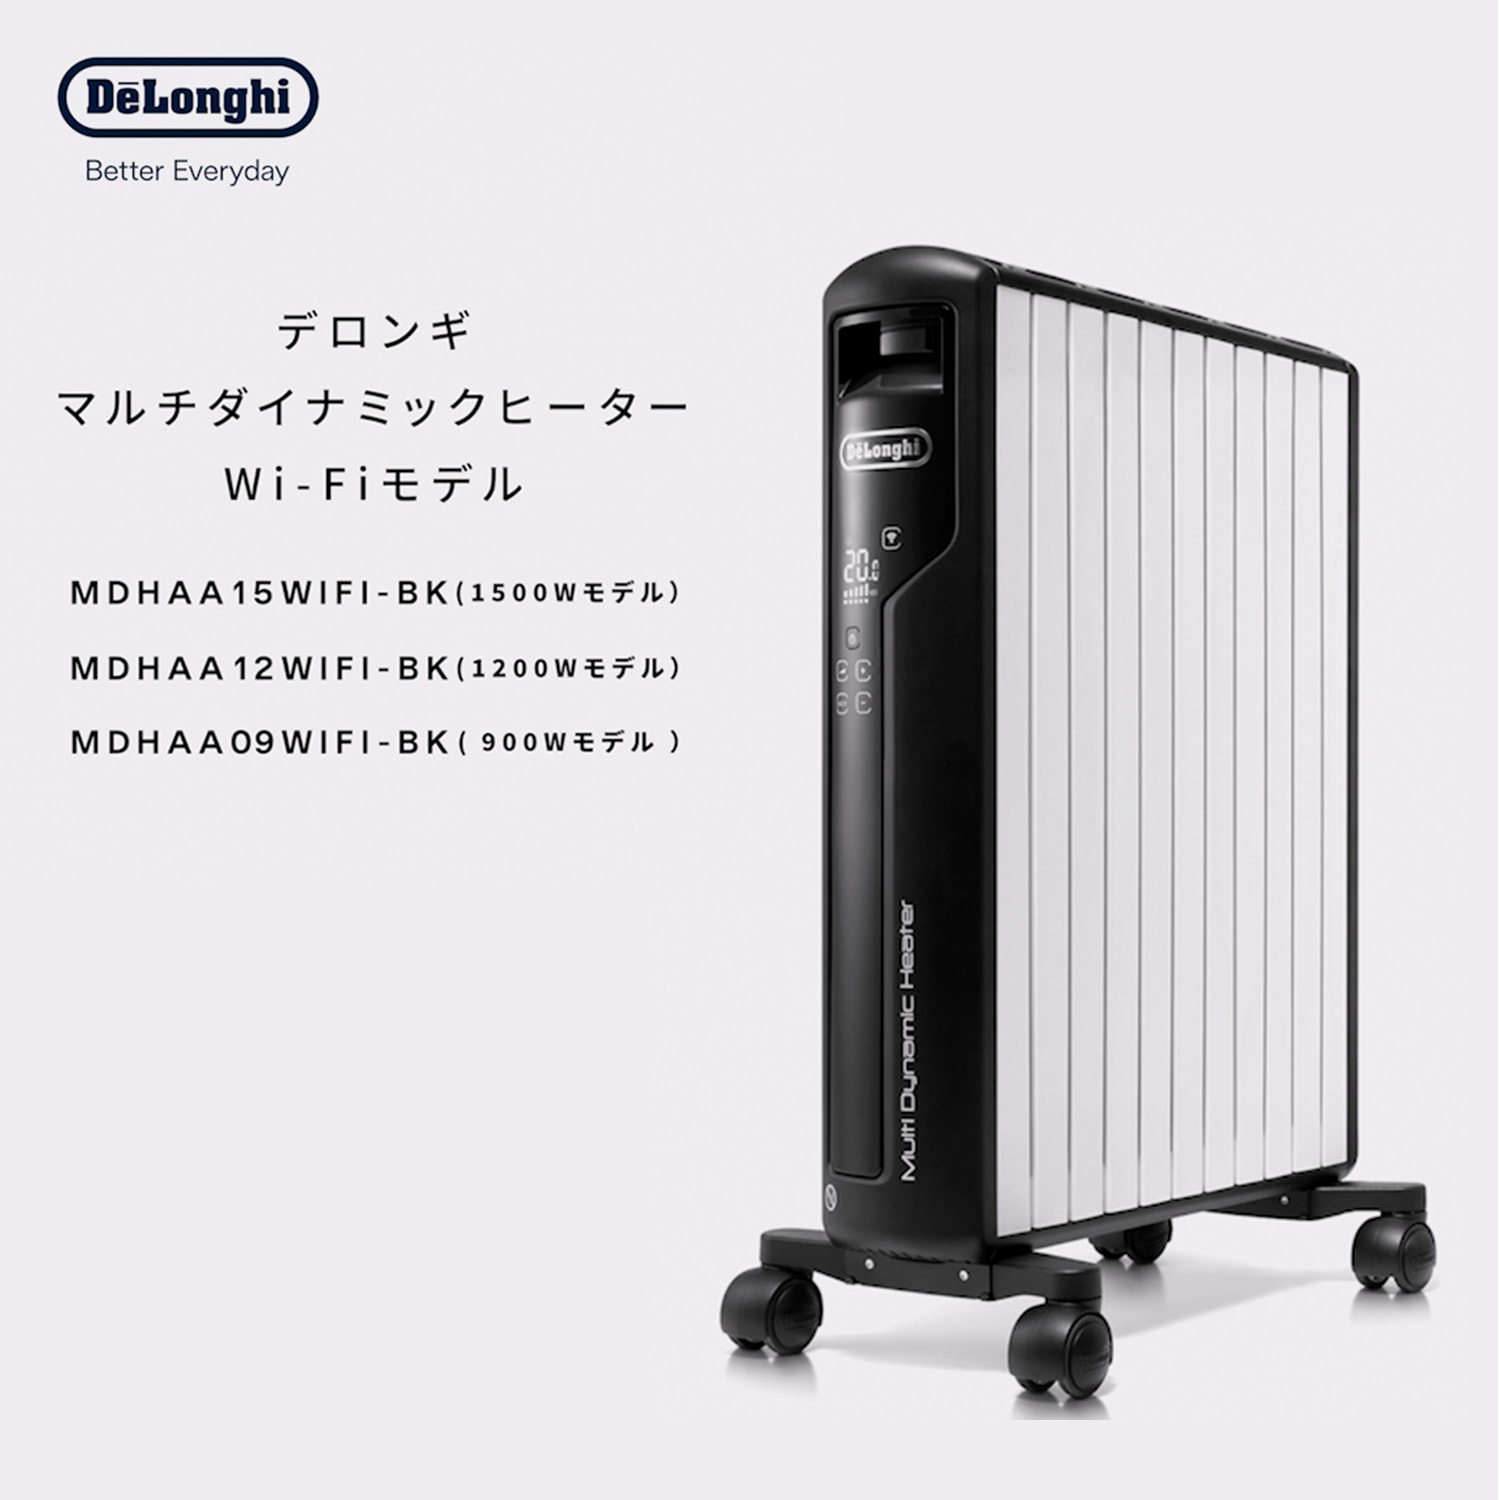 デロンギ マルチダイナミックヒーター Wi-Fiモデル MDHAA12WIFI-BK 